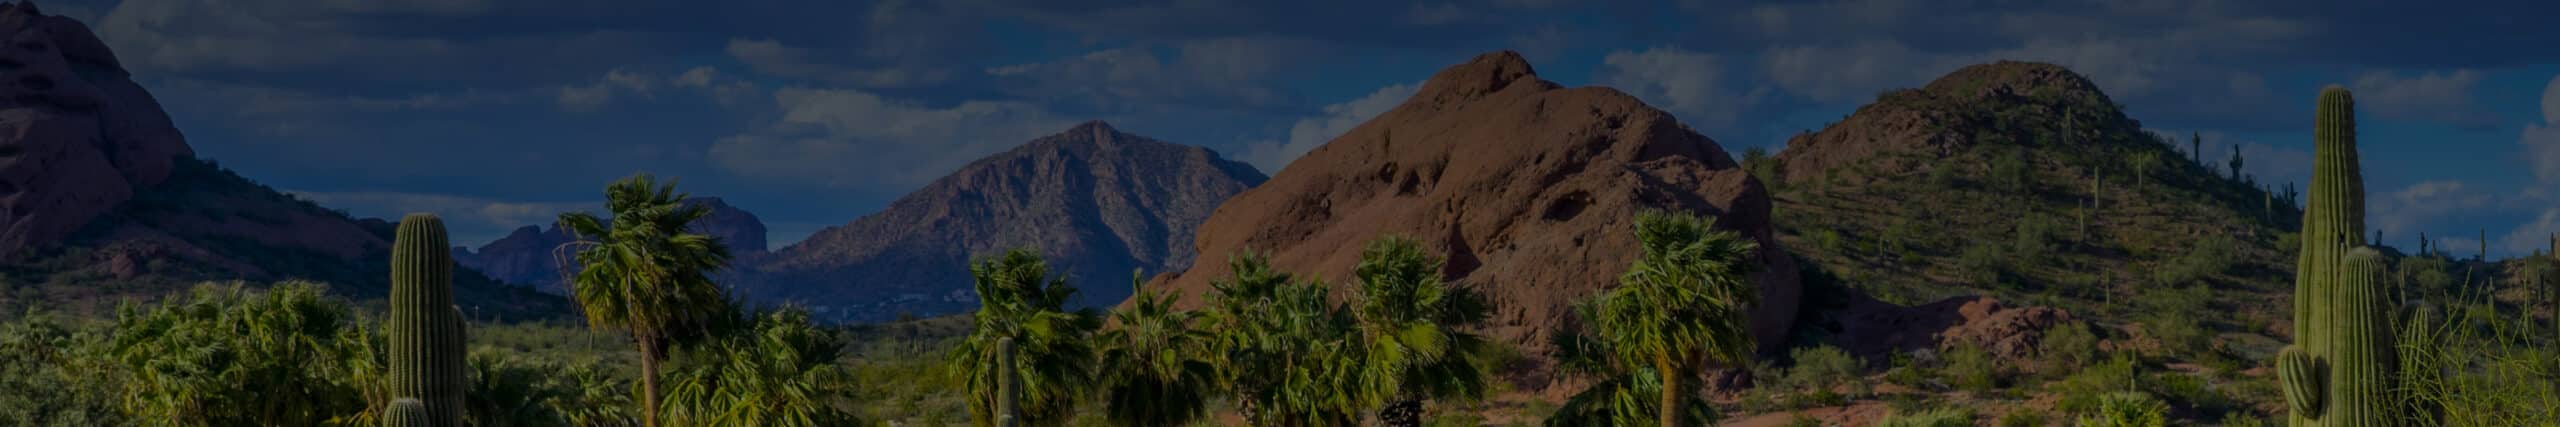 Arizona panorama with cacti